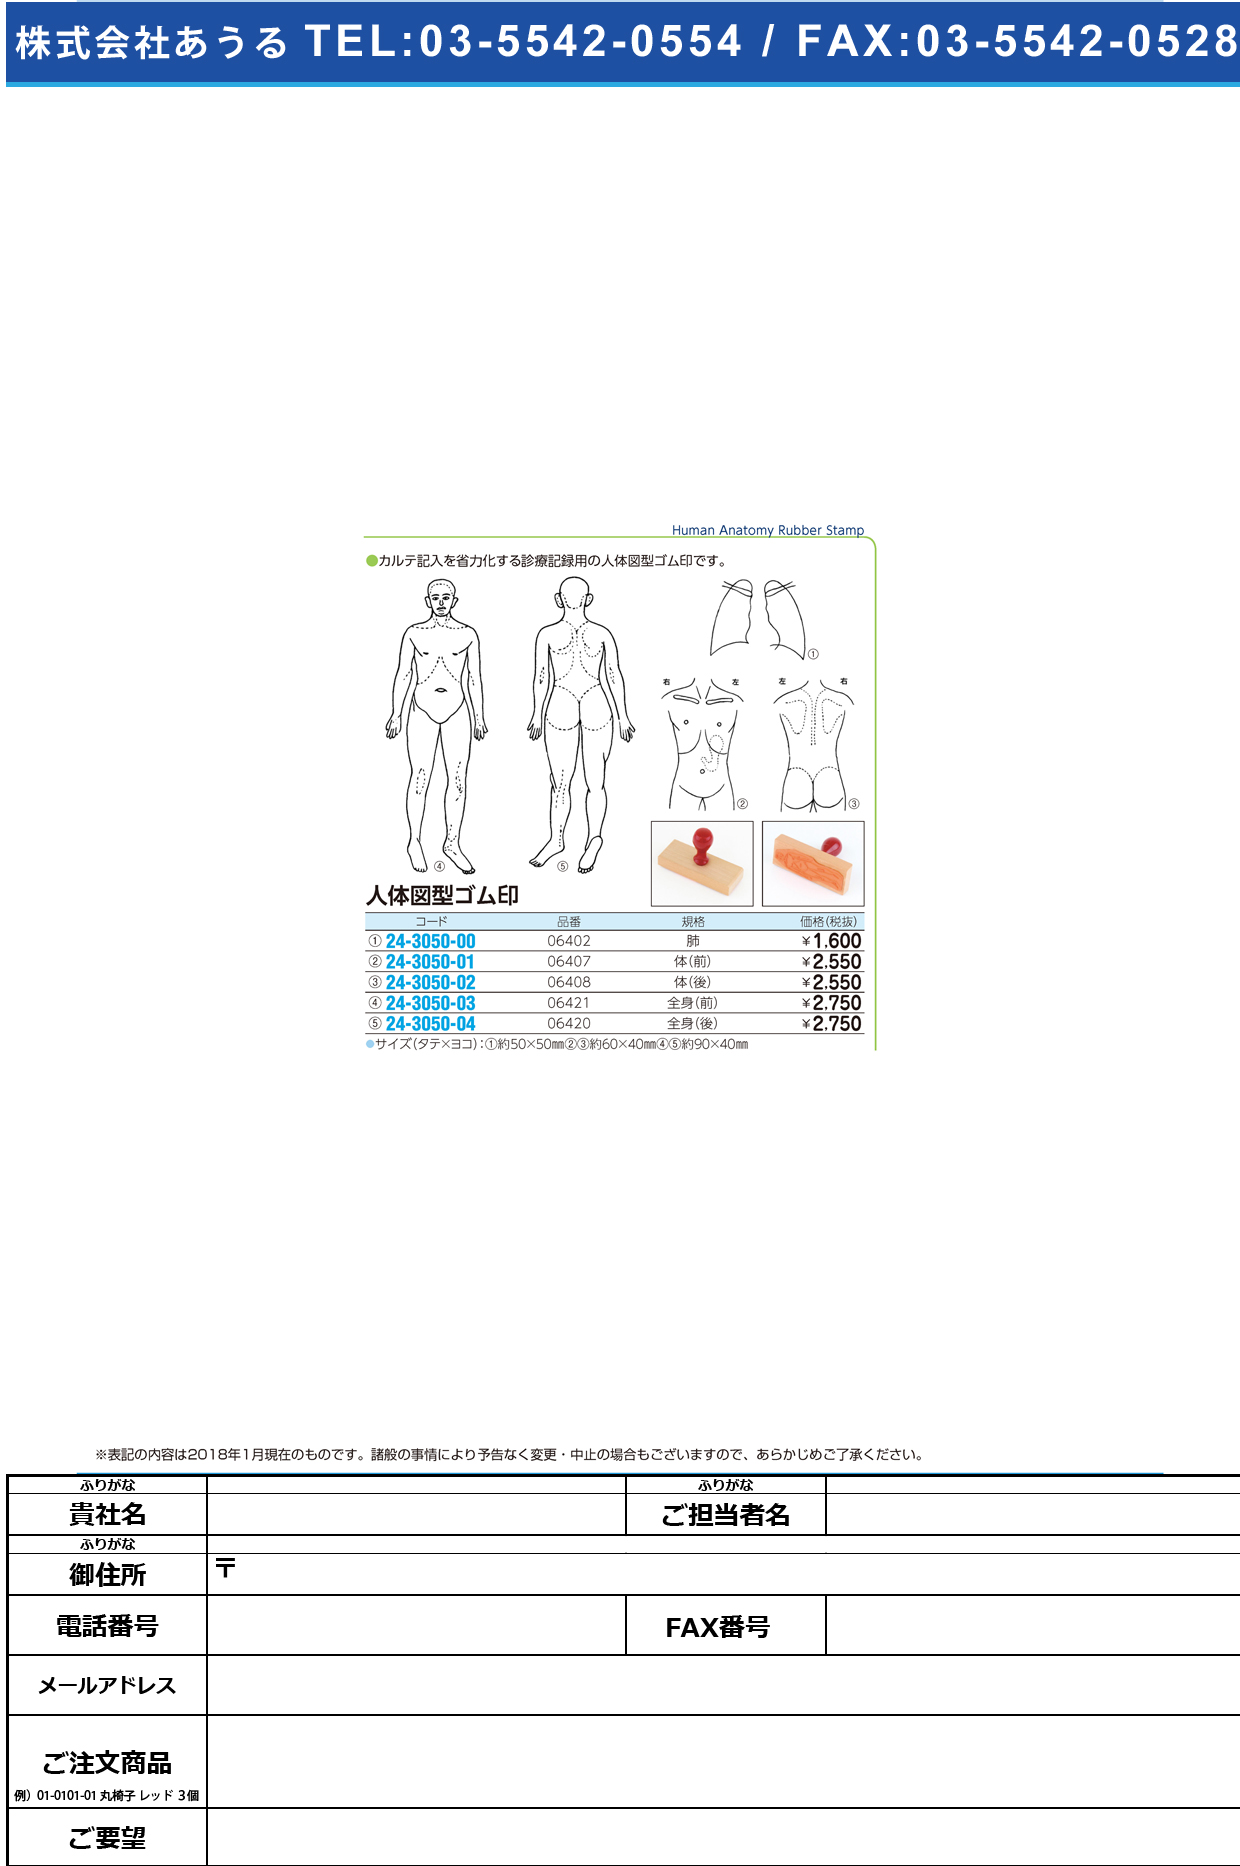 (24-3050-04)人体図型ゴム印 06420 ｼﾞﾝﾀｲｽﾞｹｲｺﾞﾑｲﾝ【1個単位】【2019年カタログ商品】